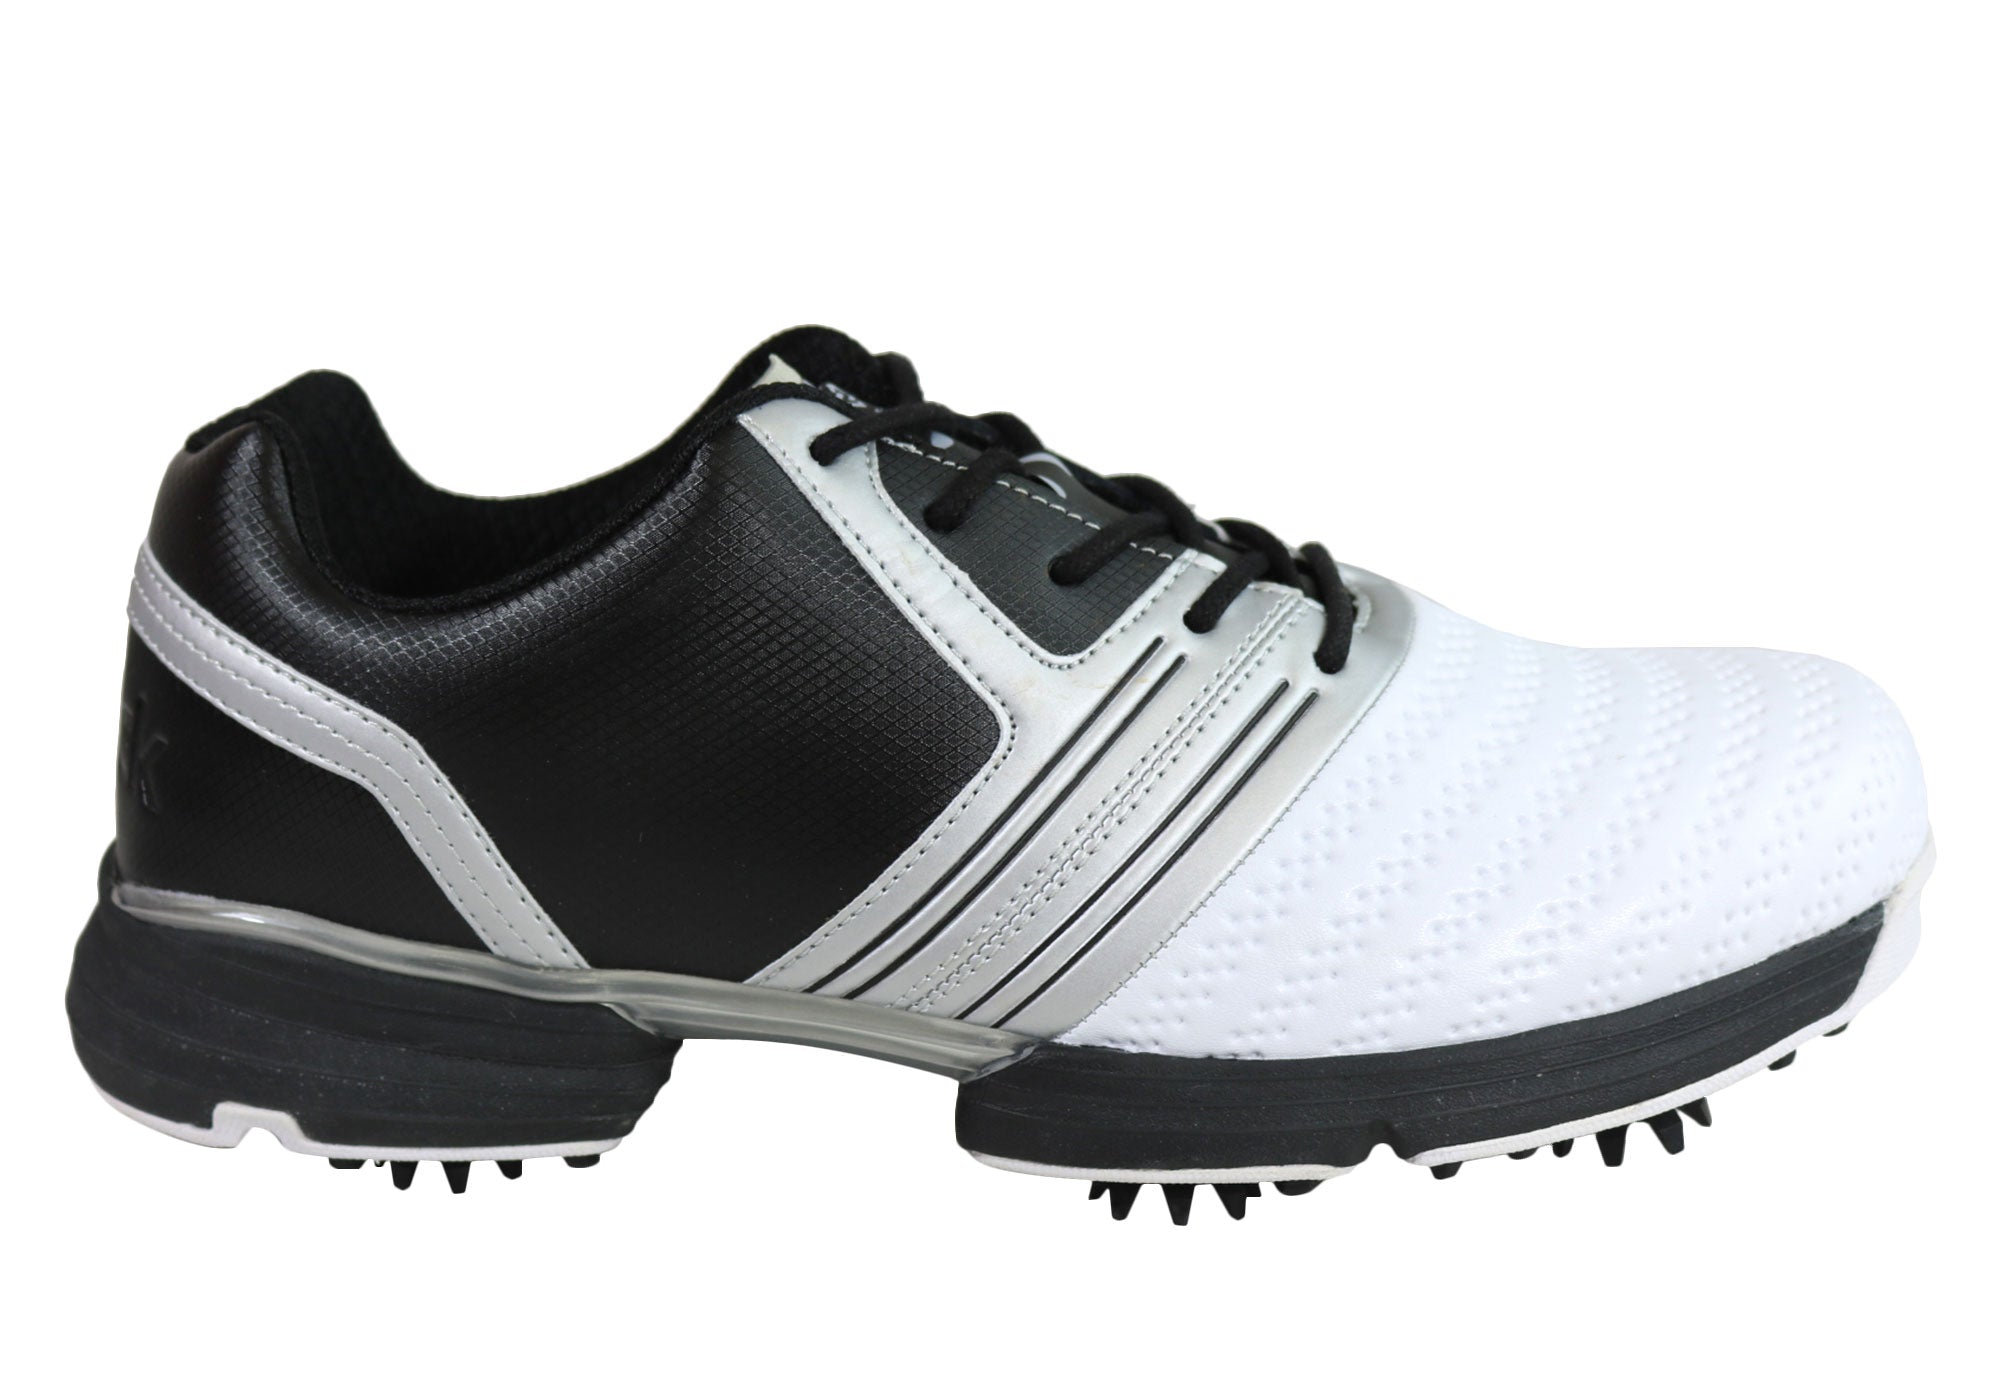 waterproof golf shoes